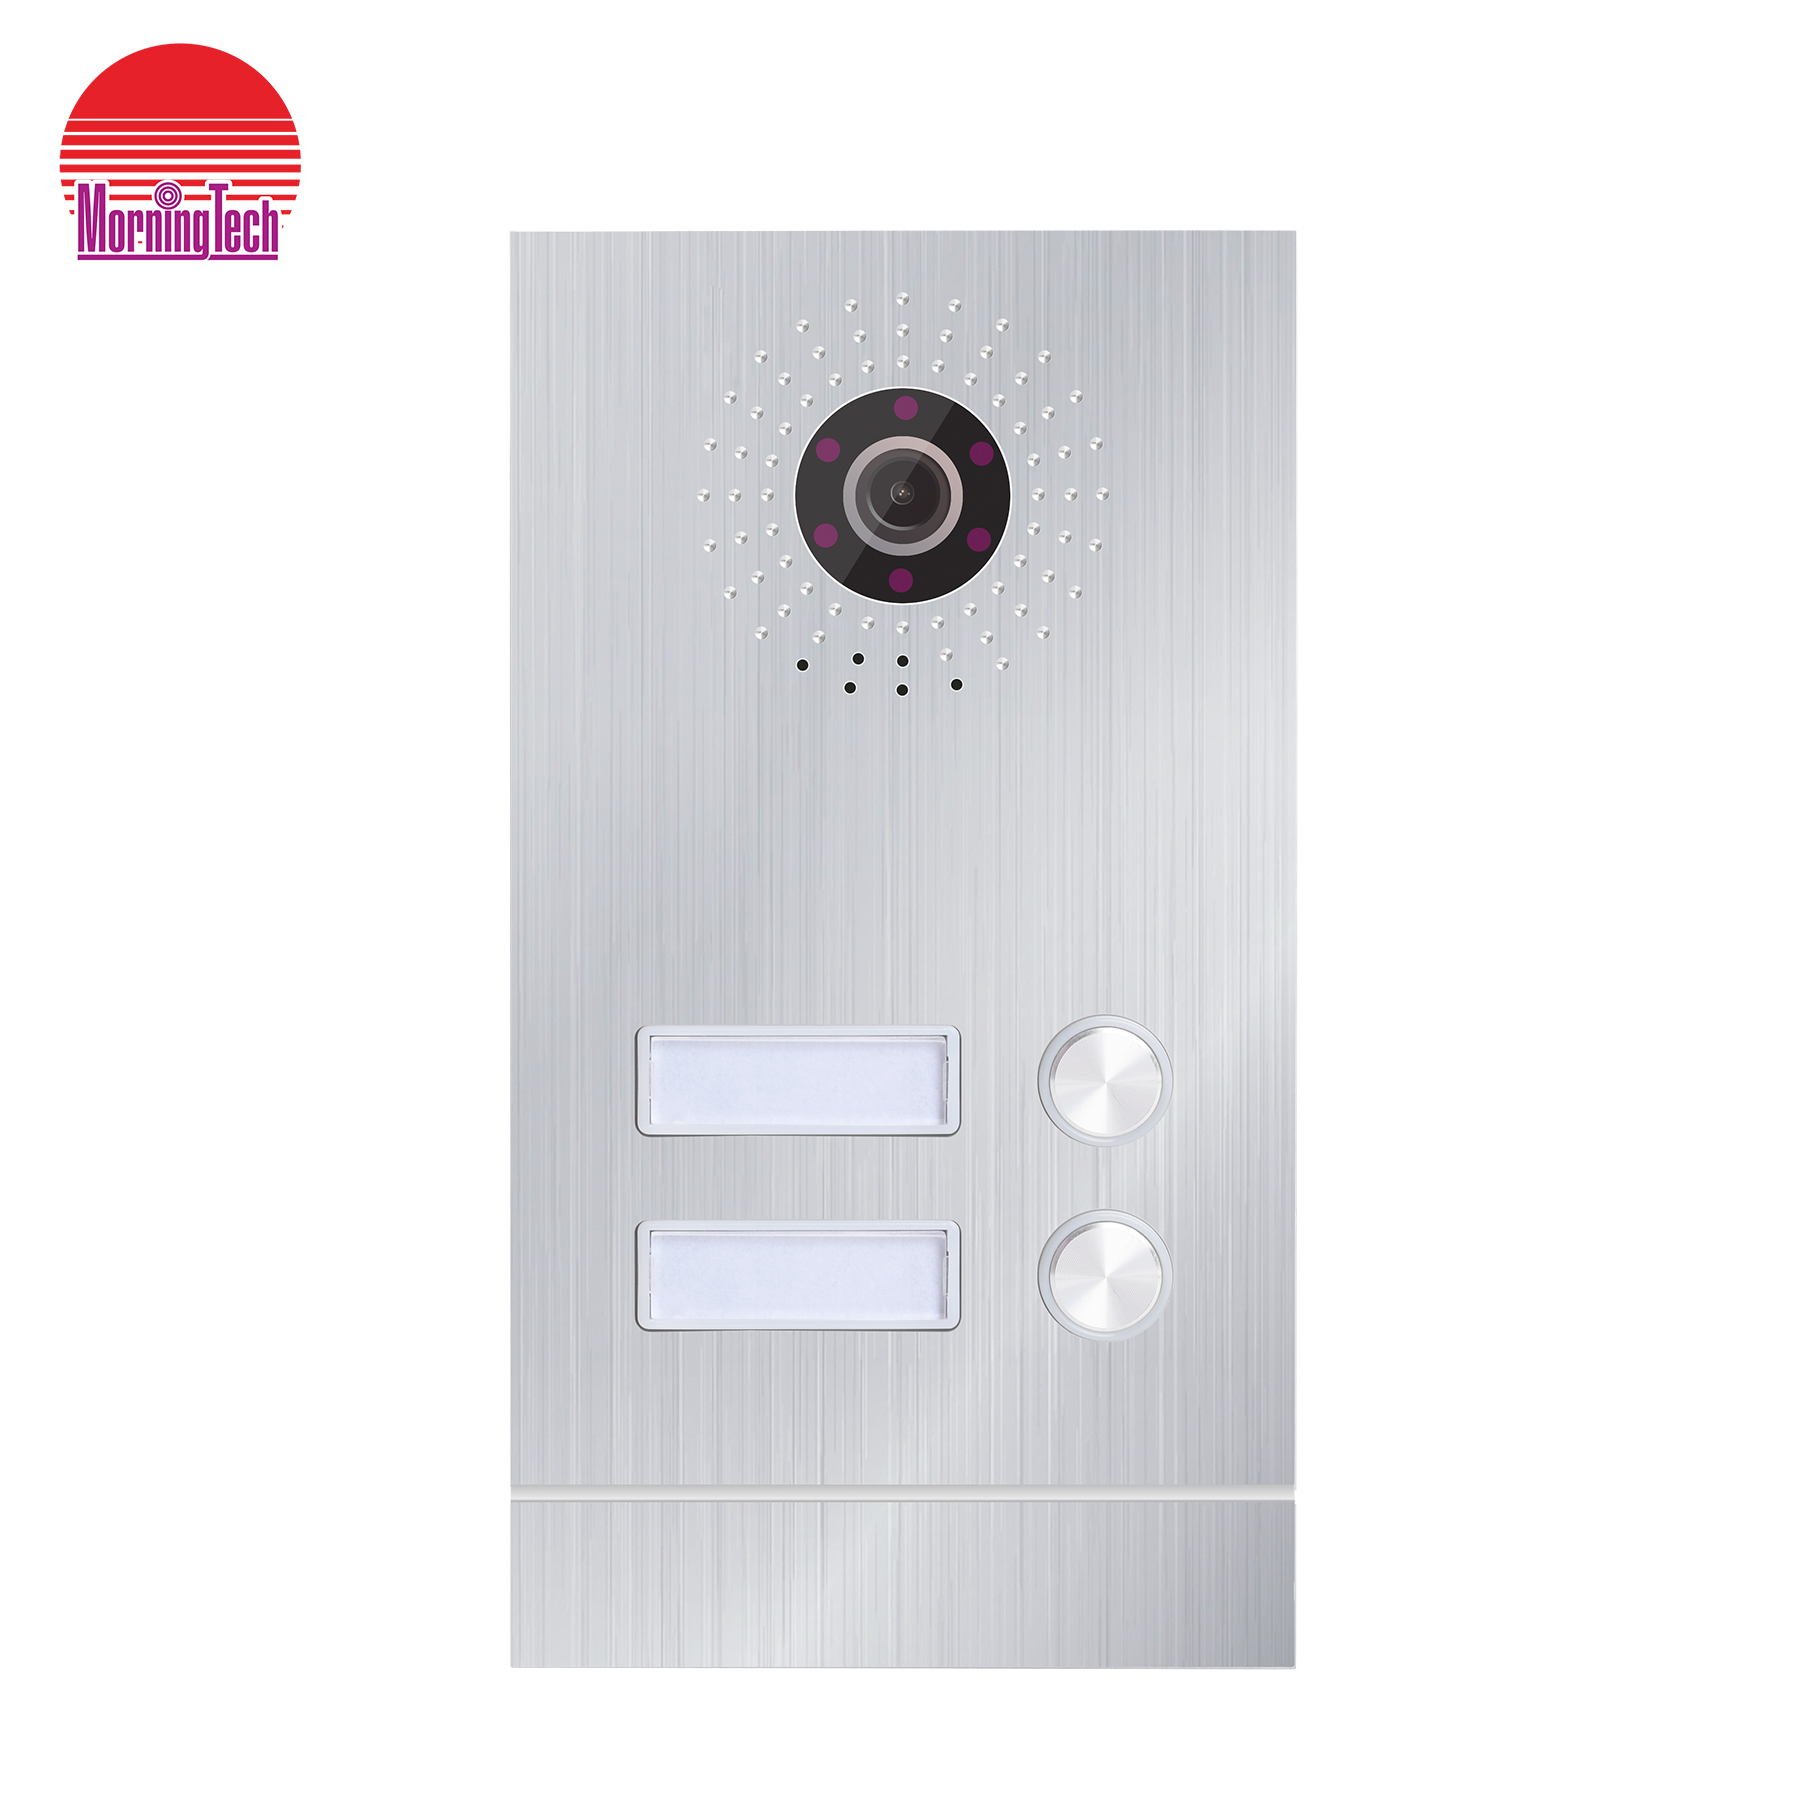 94220 многоквартирных домов с использованием вызывной станции для видеодомофона Кнопочная панель вызова дверной домофонной системы